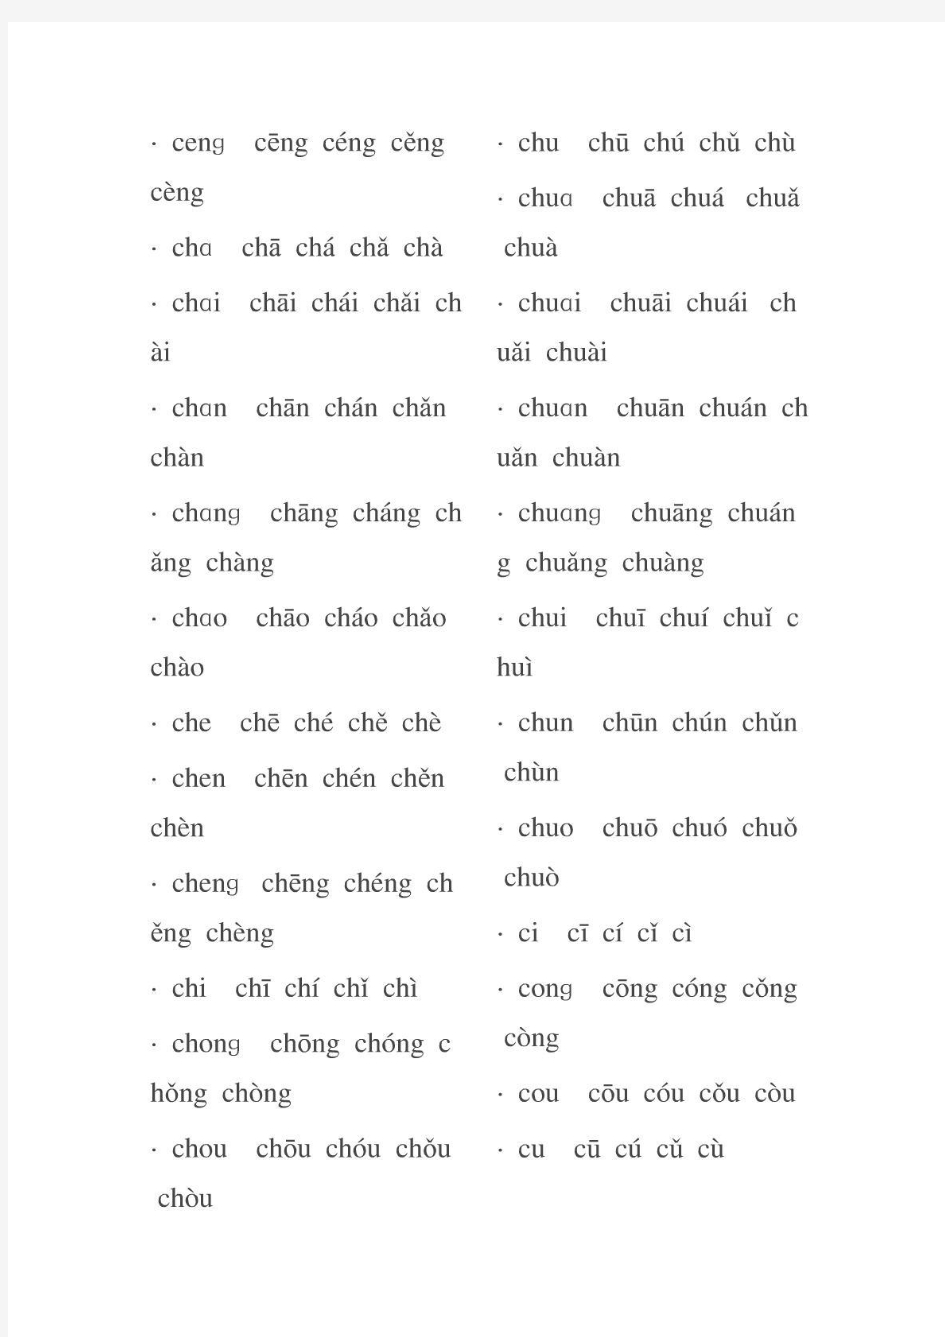 汉语拼音声调表